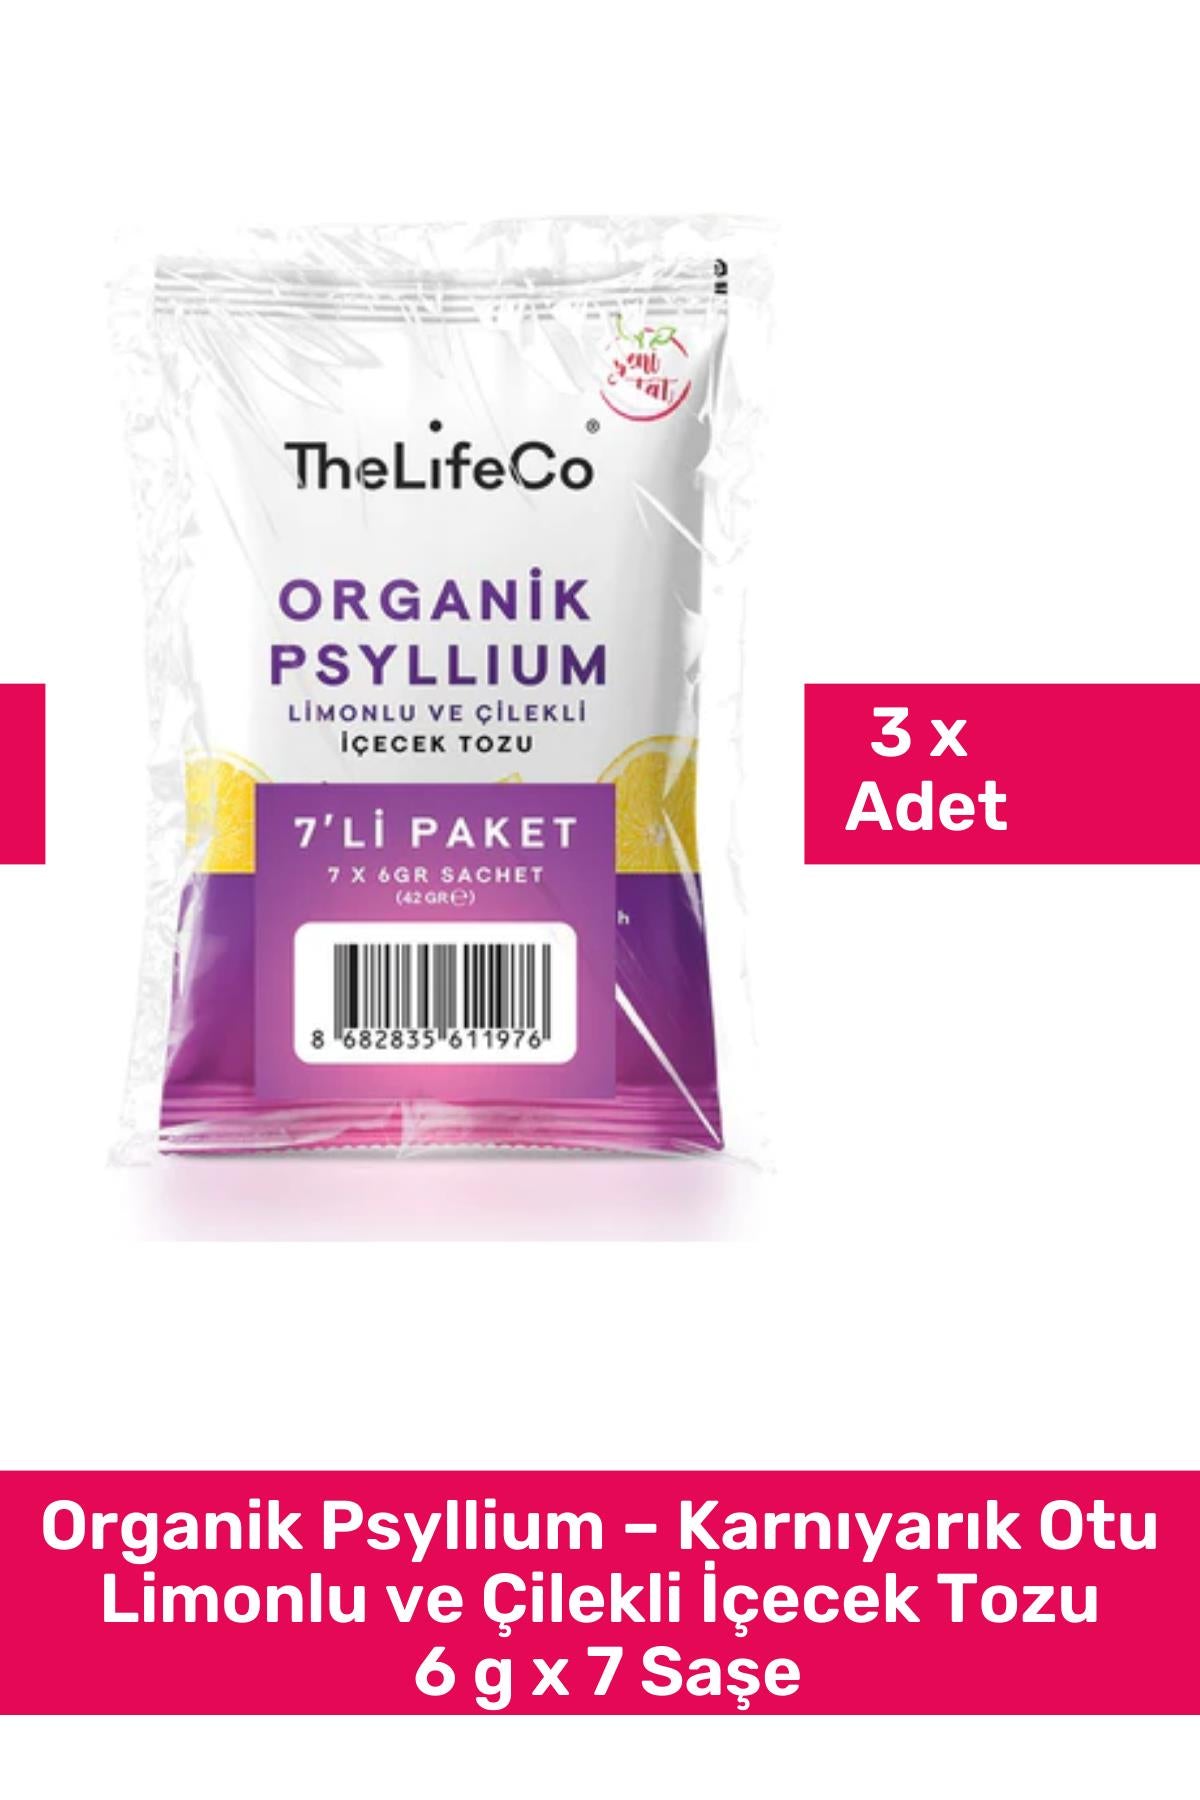 TheLifeCo Organik Psyllium – Karnıyarık Otu Limonlu ve Çilekli İçecek Tozu 6 g x 7 Saşe 3'lü Paket